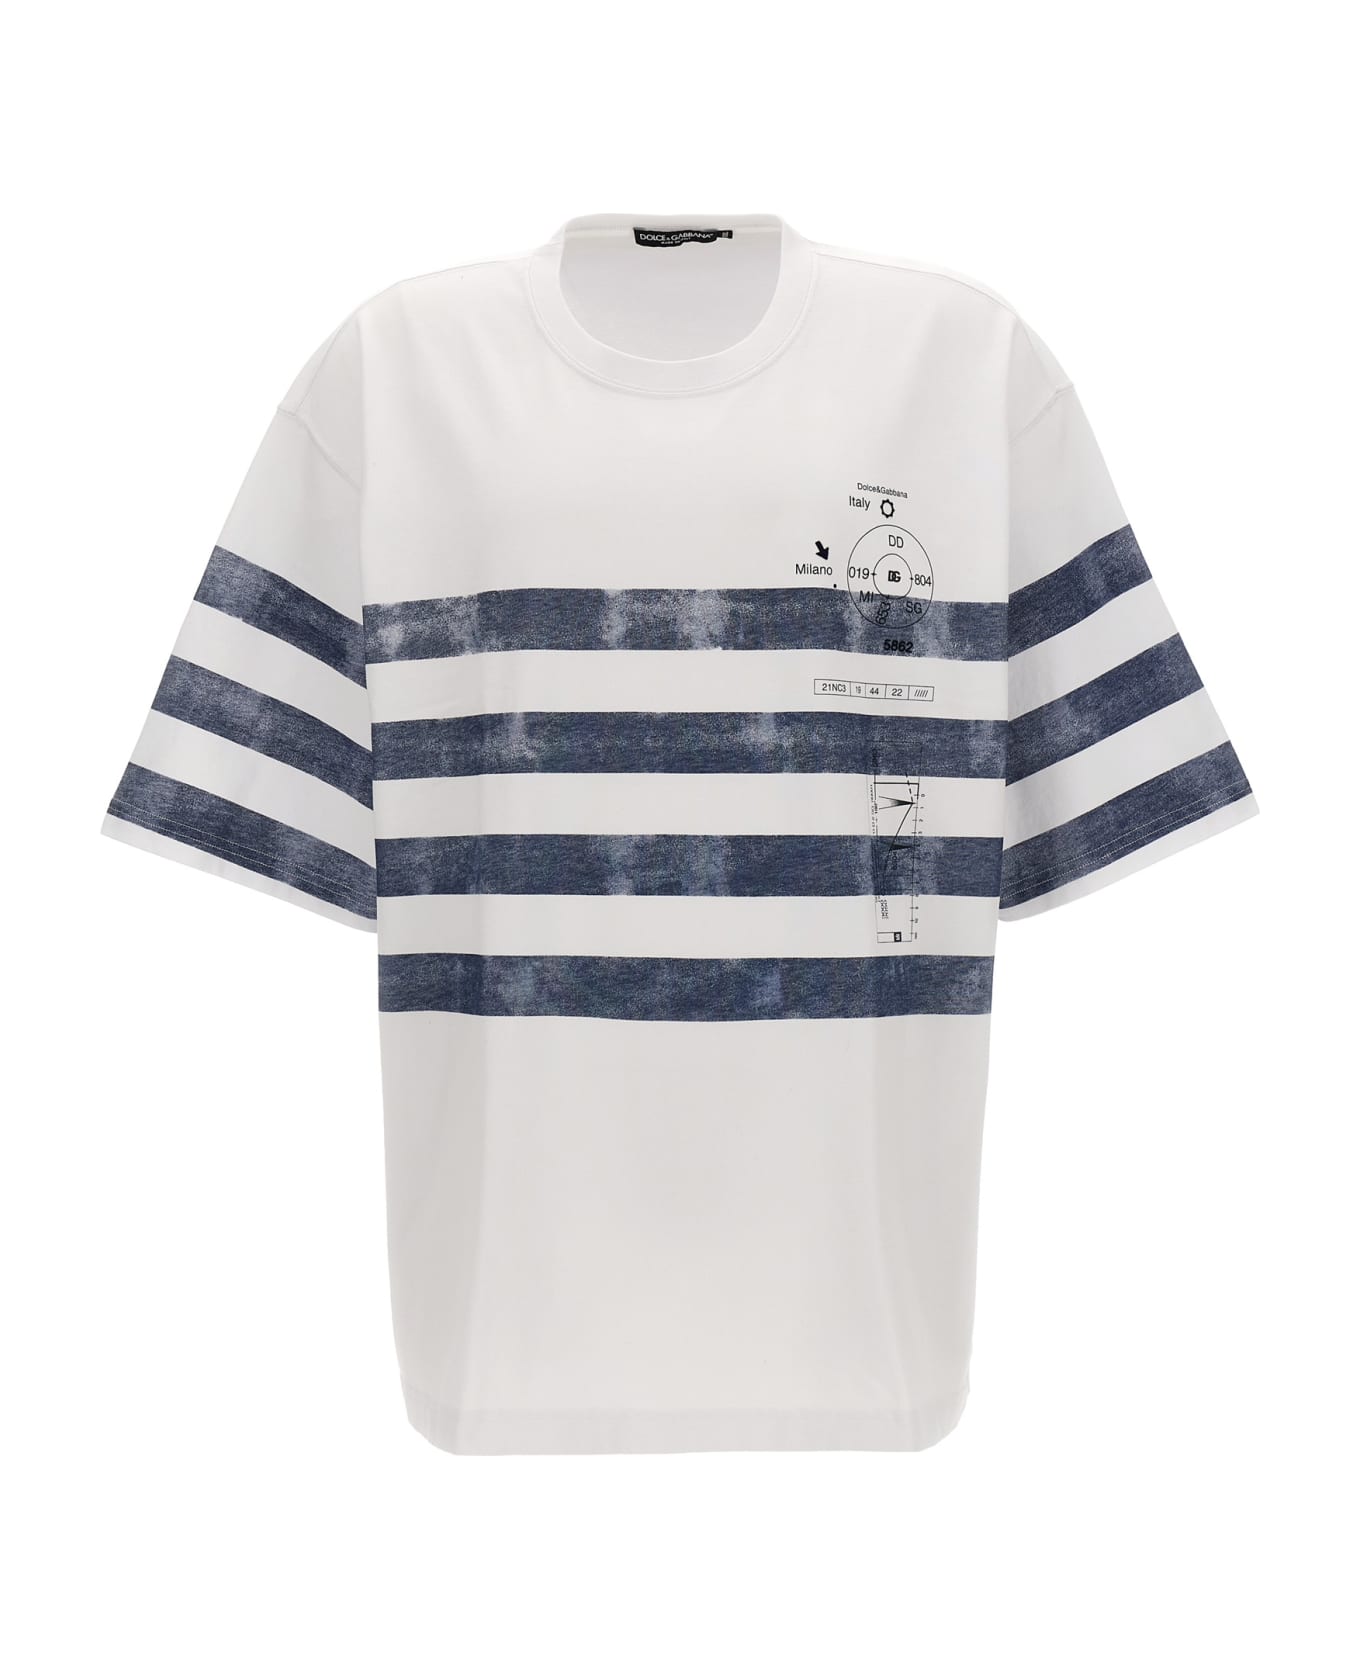 Dolce & Gabbana Marina Cotton Crewneck T-shirt - White